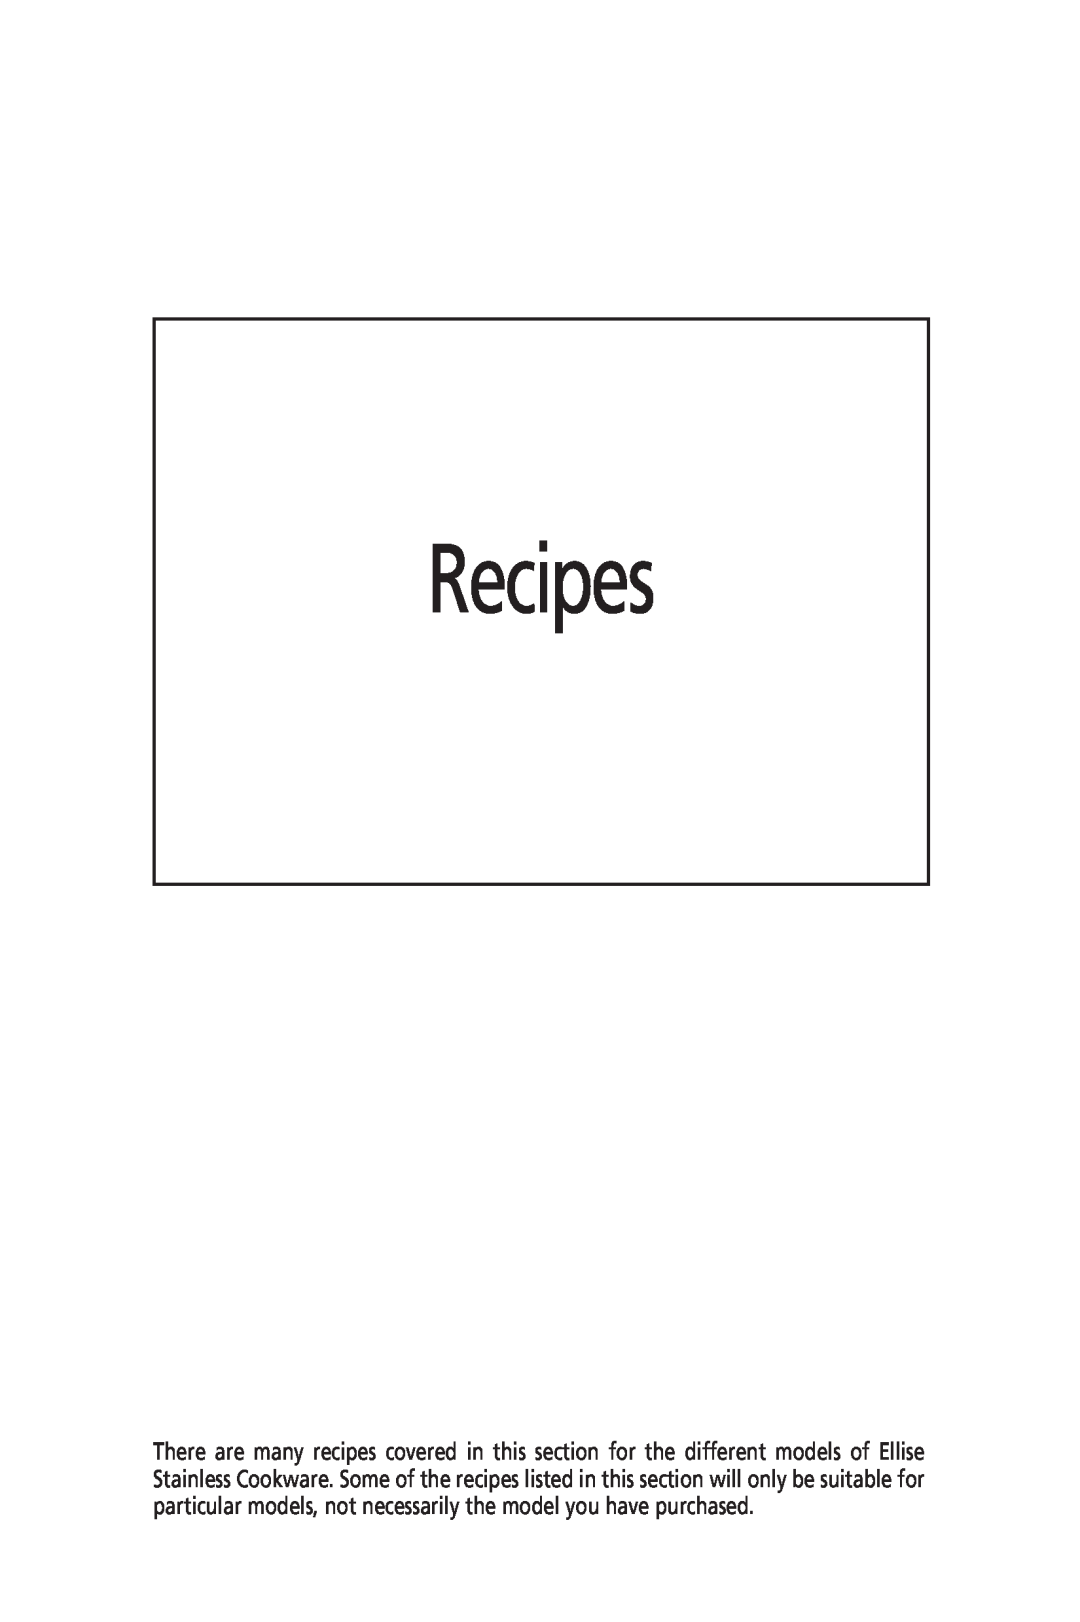 Sunbeam FP8400, FP8600 manual Recipes 